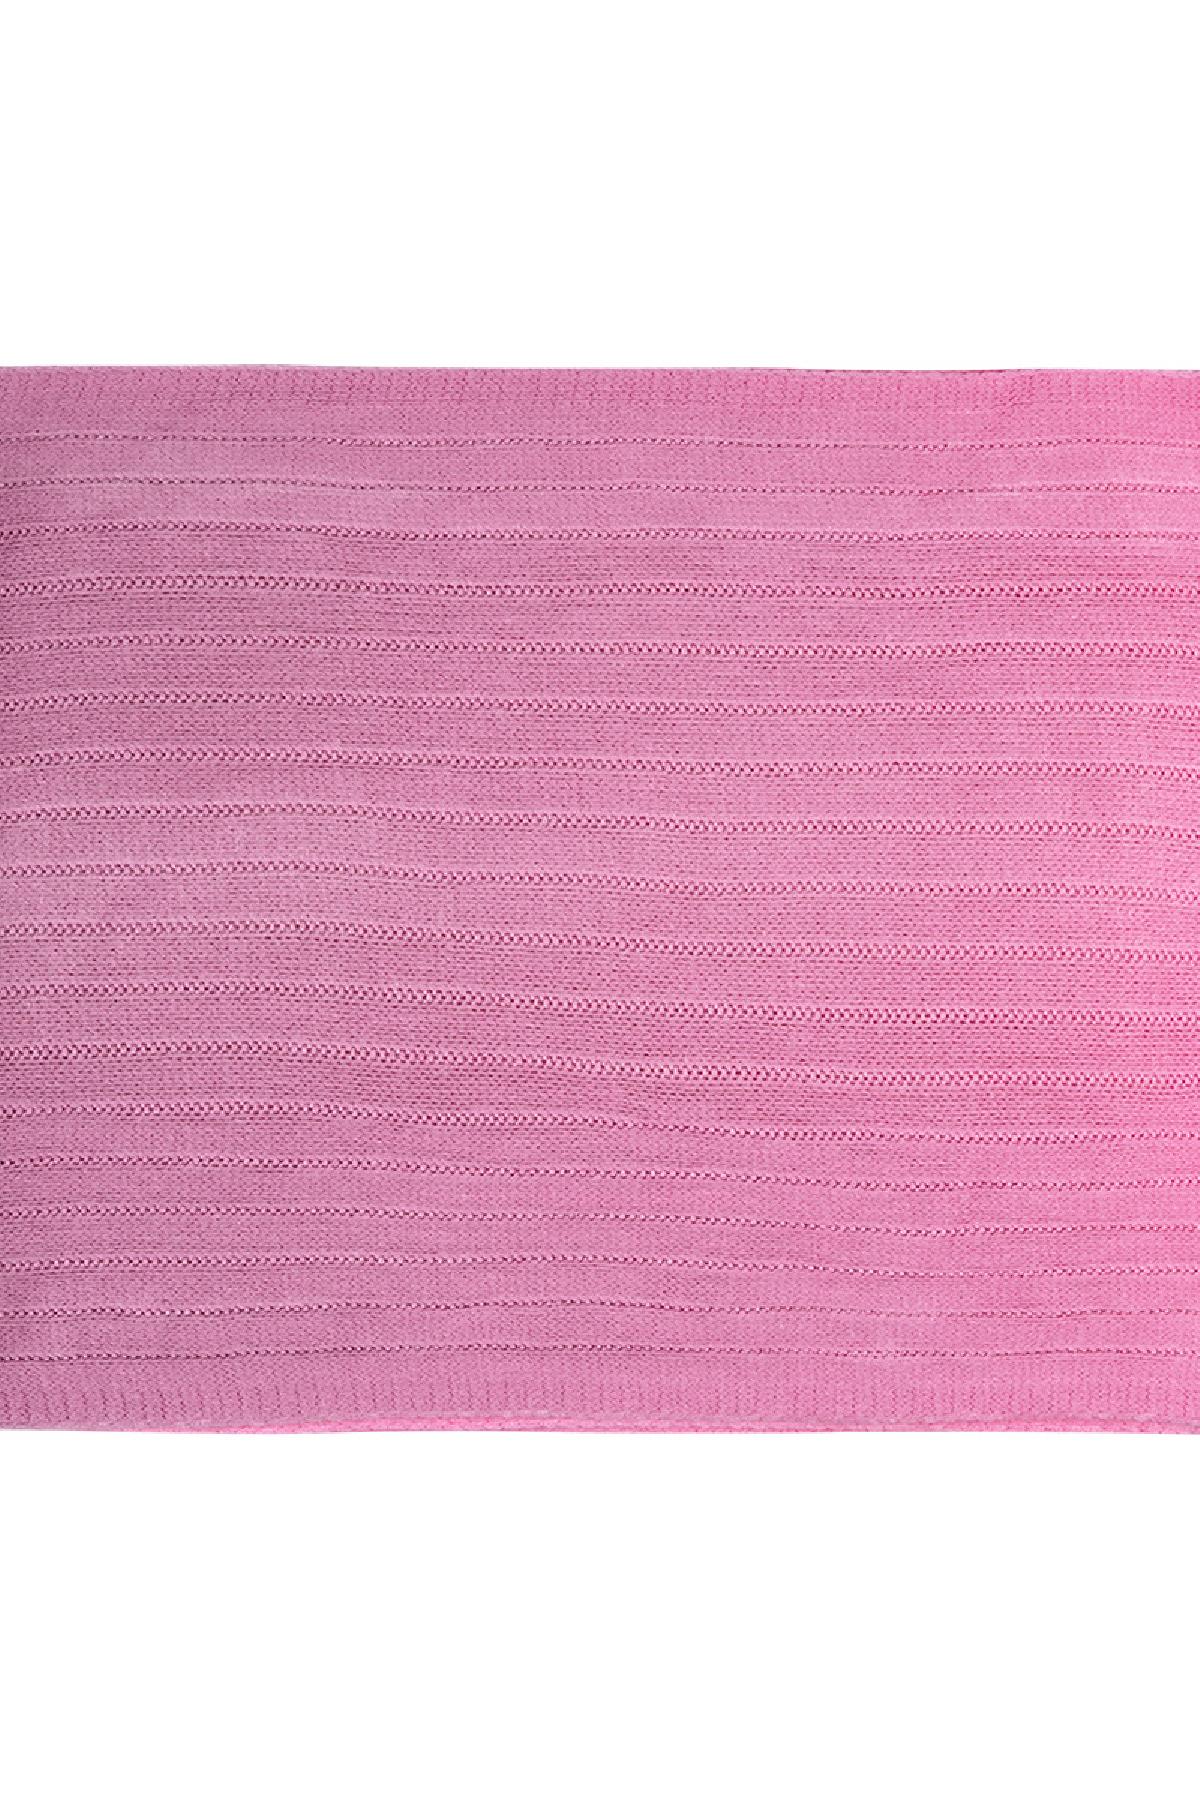 Kravat boya eşarp Pink Acrylic h5 Resim3